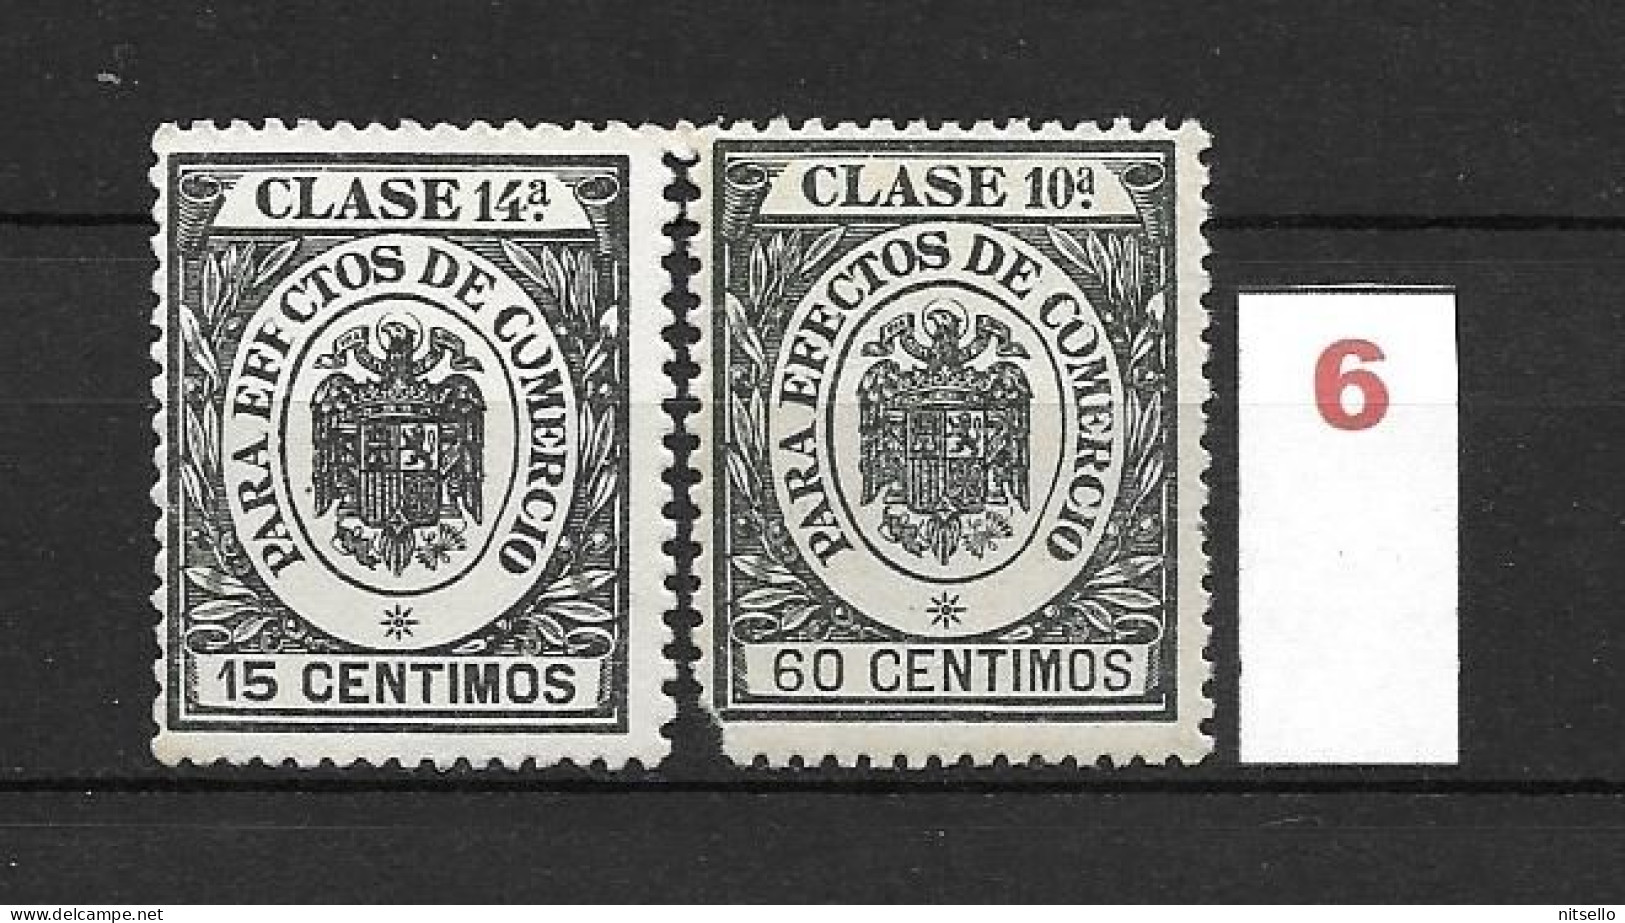 LOTE 1891 C  ///  ESPAÑA - CLASE 10ª PARA EFECTOS DE COMERCIO // NUEVOS ** MNH   ¡¡¡ LIQUIDACION TOTAL !!! - Revenue Stamps